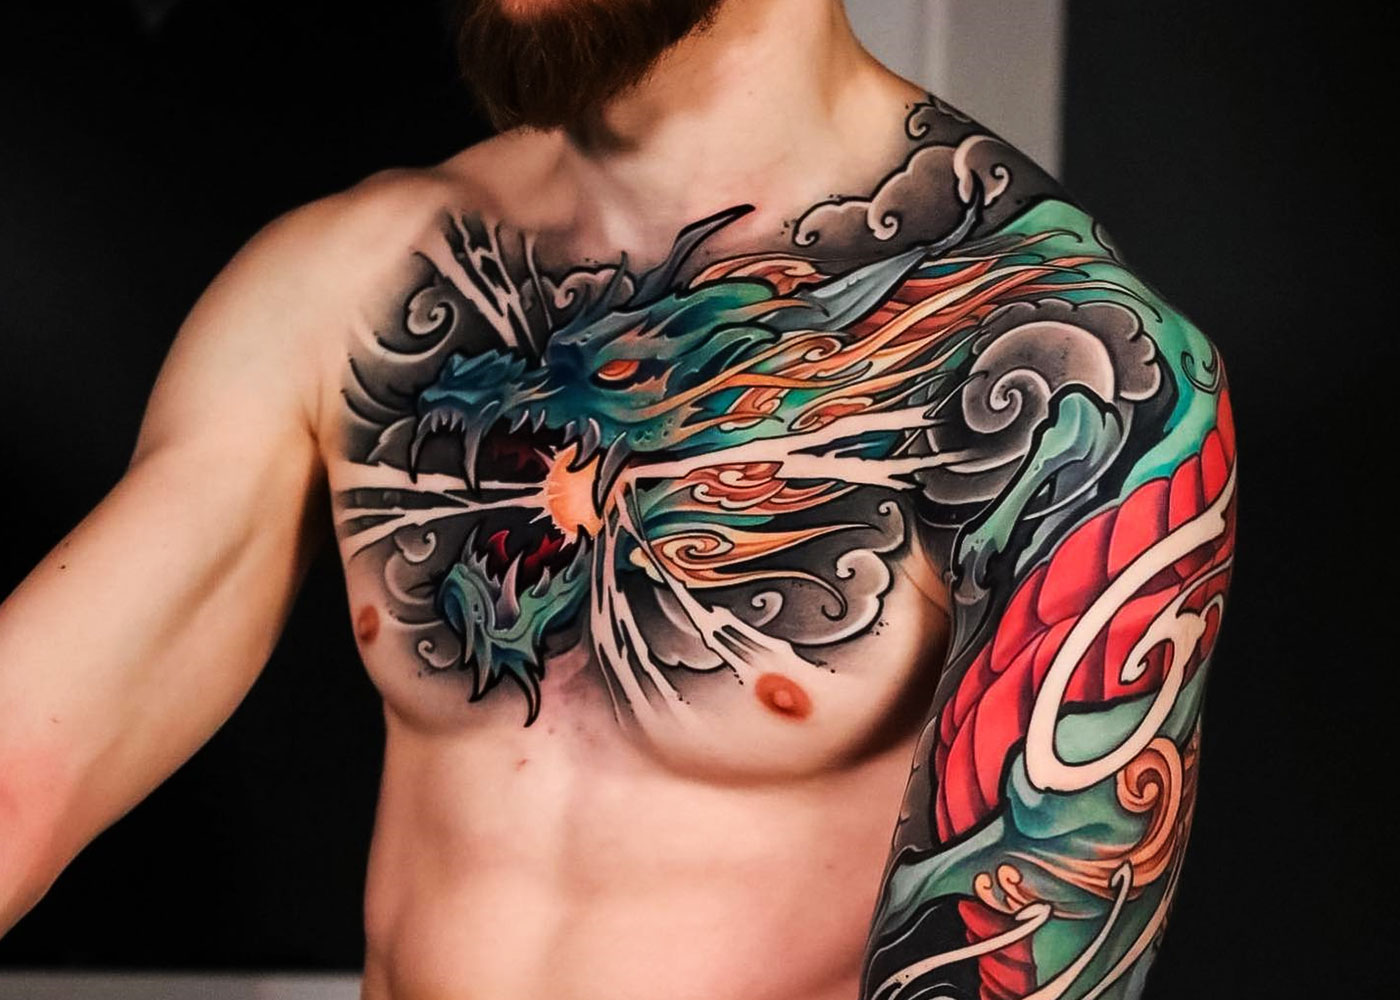 Cloud Strife (@henriquetorrestattoo) Tattoo Tatuagem | Final fantasy tattoo,  Fantasy tattoos, Tattoos